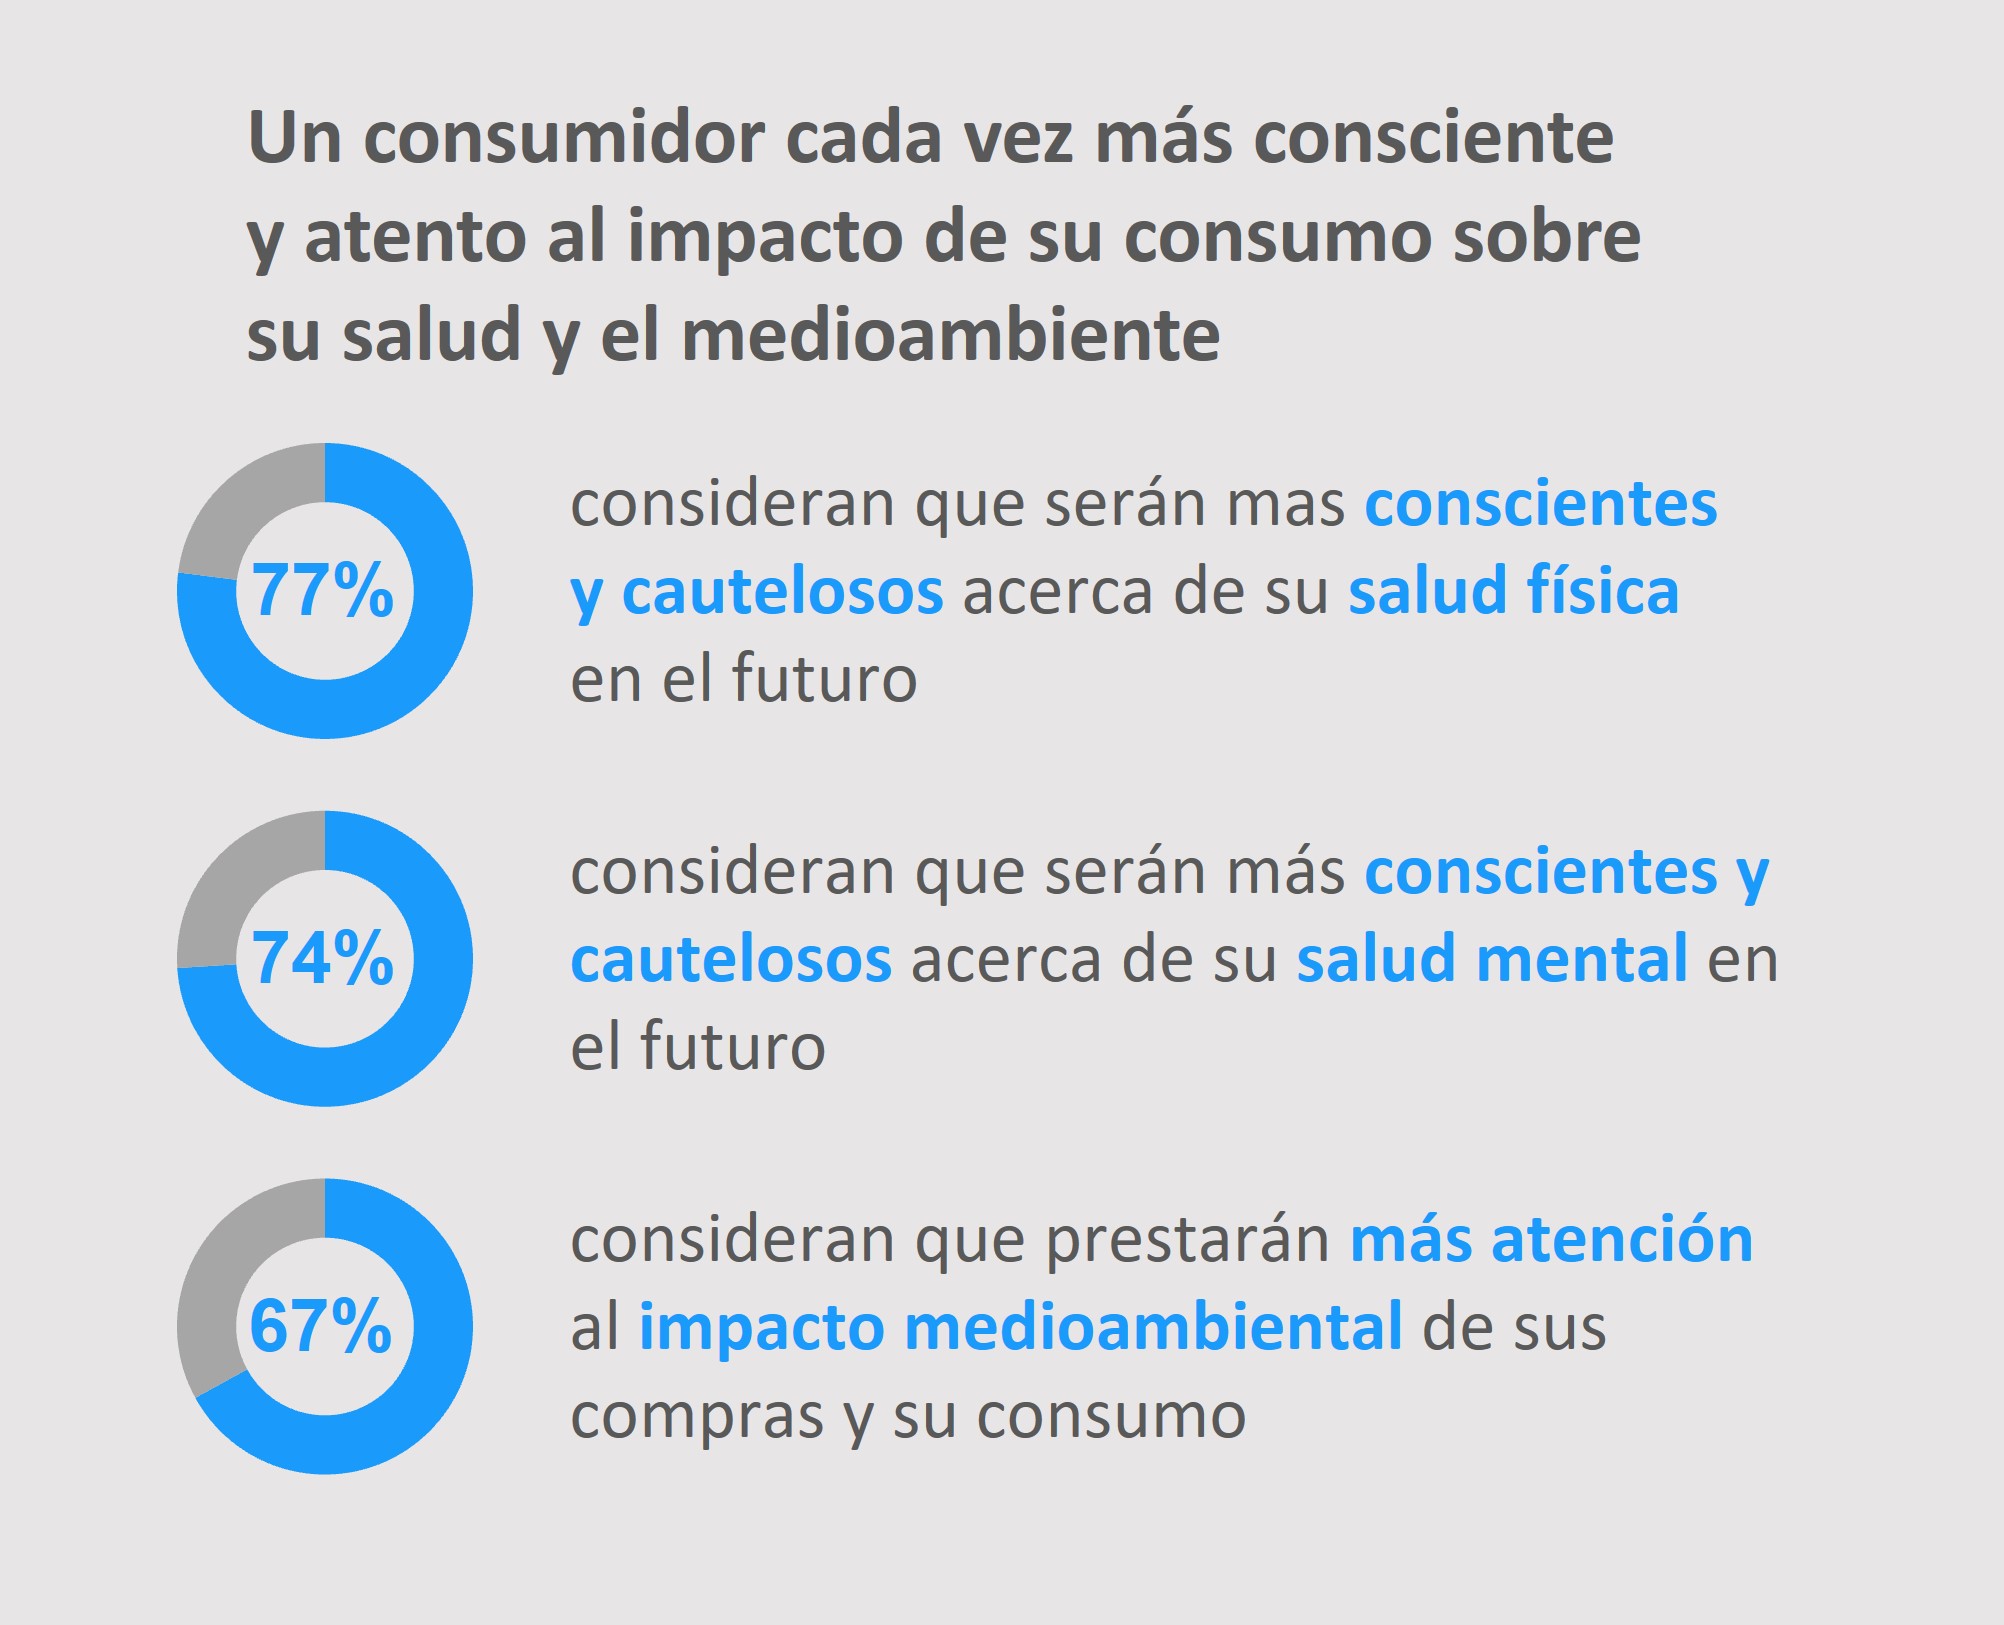 Gráfico que representa en porcentajes la concientización del consumidor ante el impacto de sus decisiones de consumo en su salud y en el medioambiente